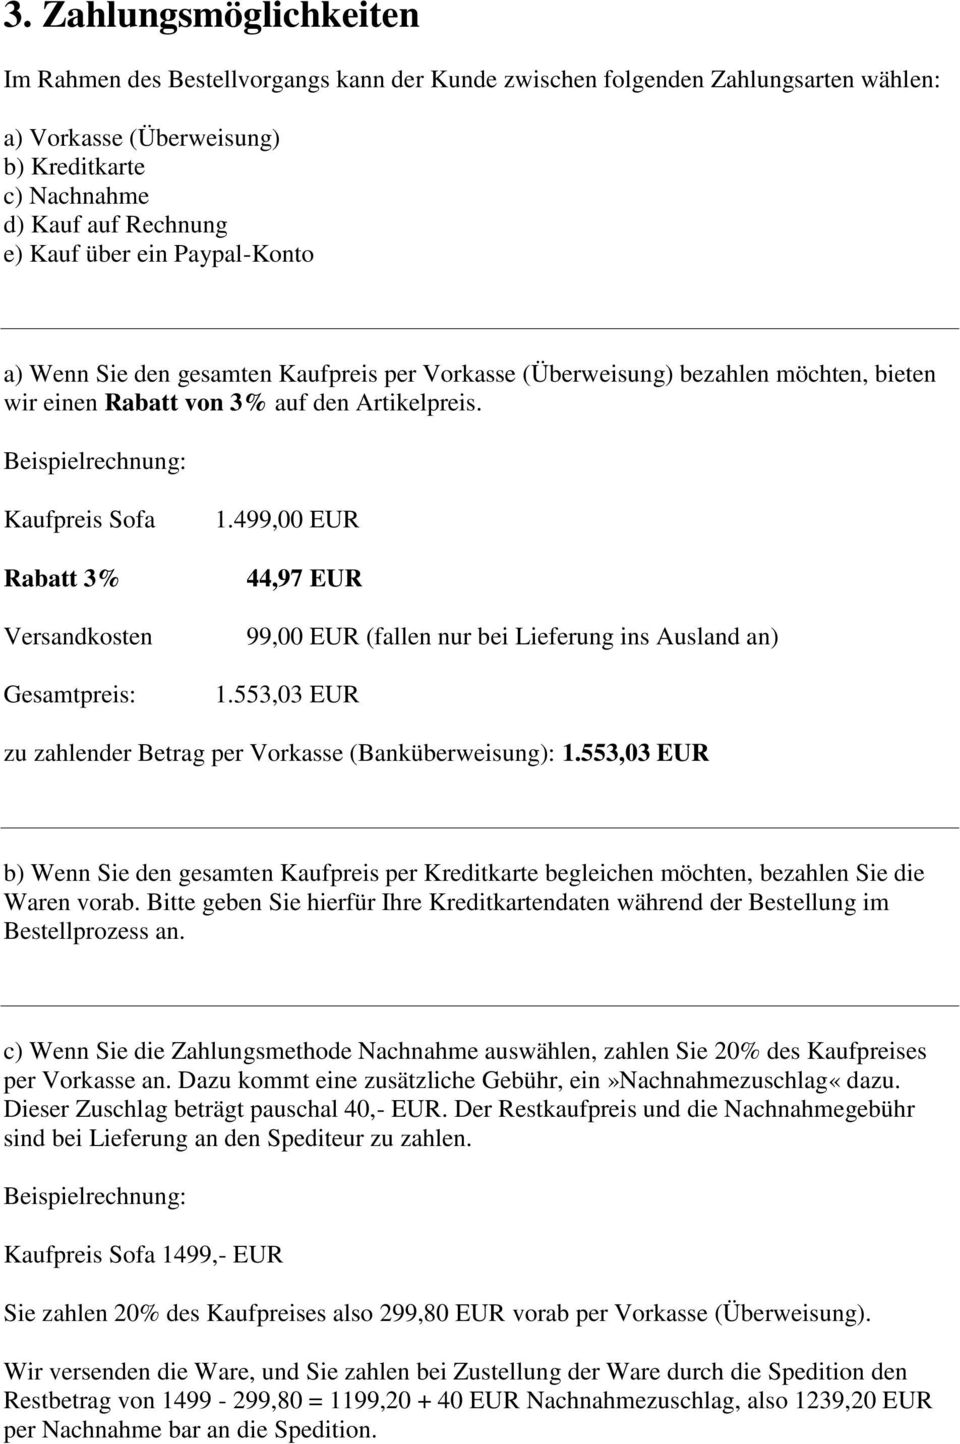 Beispielrechnung: Kaufpreis Sofa Rabatt 3% Versandkosten Gesamtpreis: 1.499,00 EUR 44,97 EUR 99,00 EUR (fallen nur bei Lieferung ins Ausland an) 1.